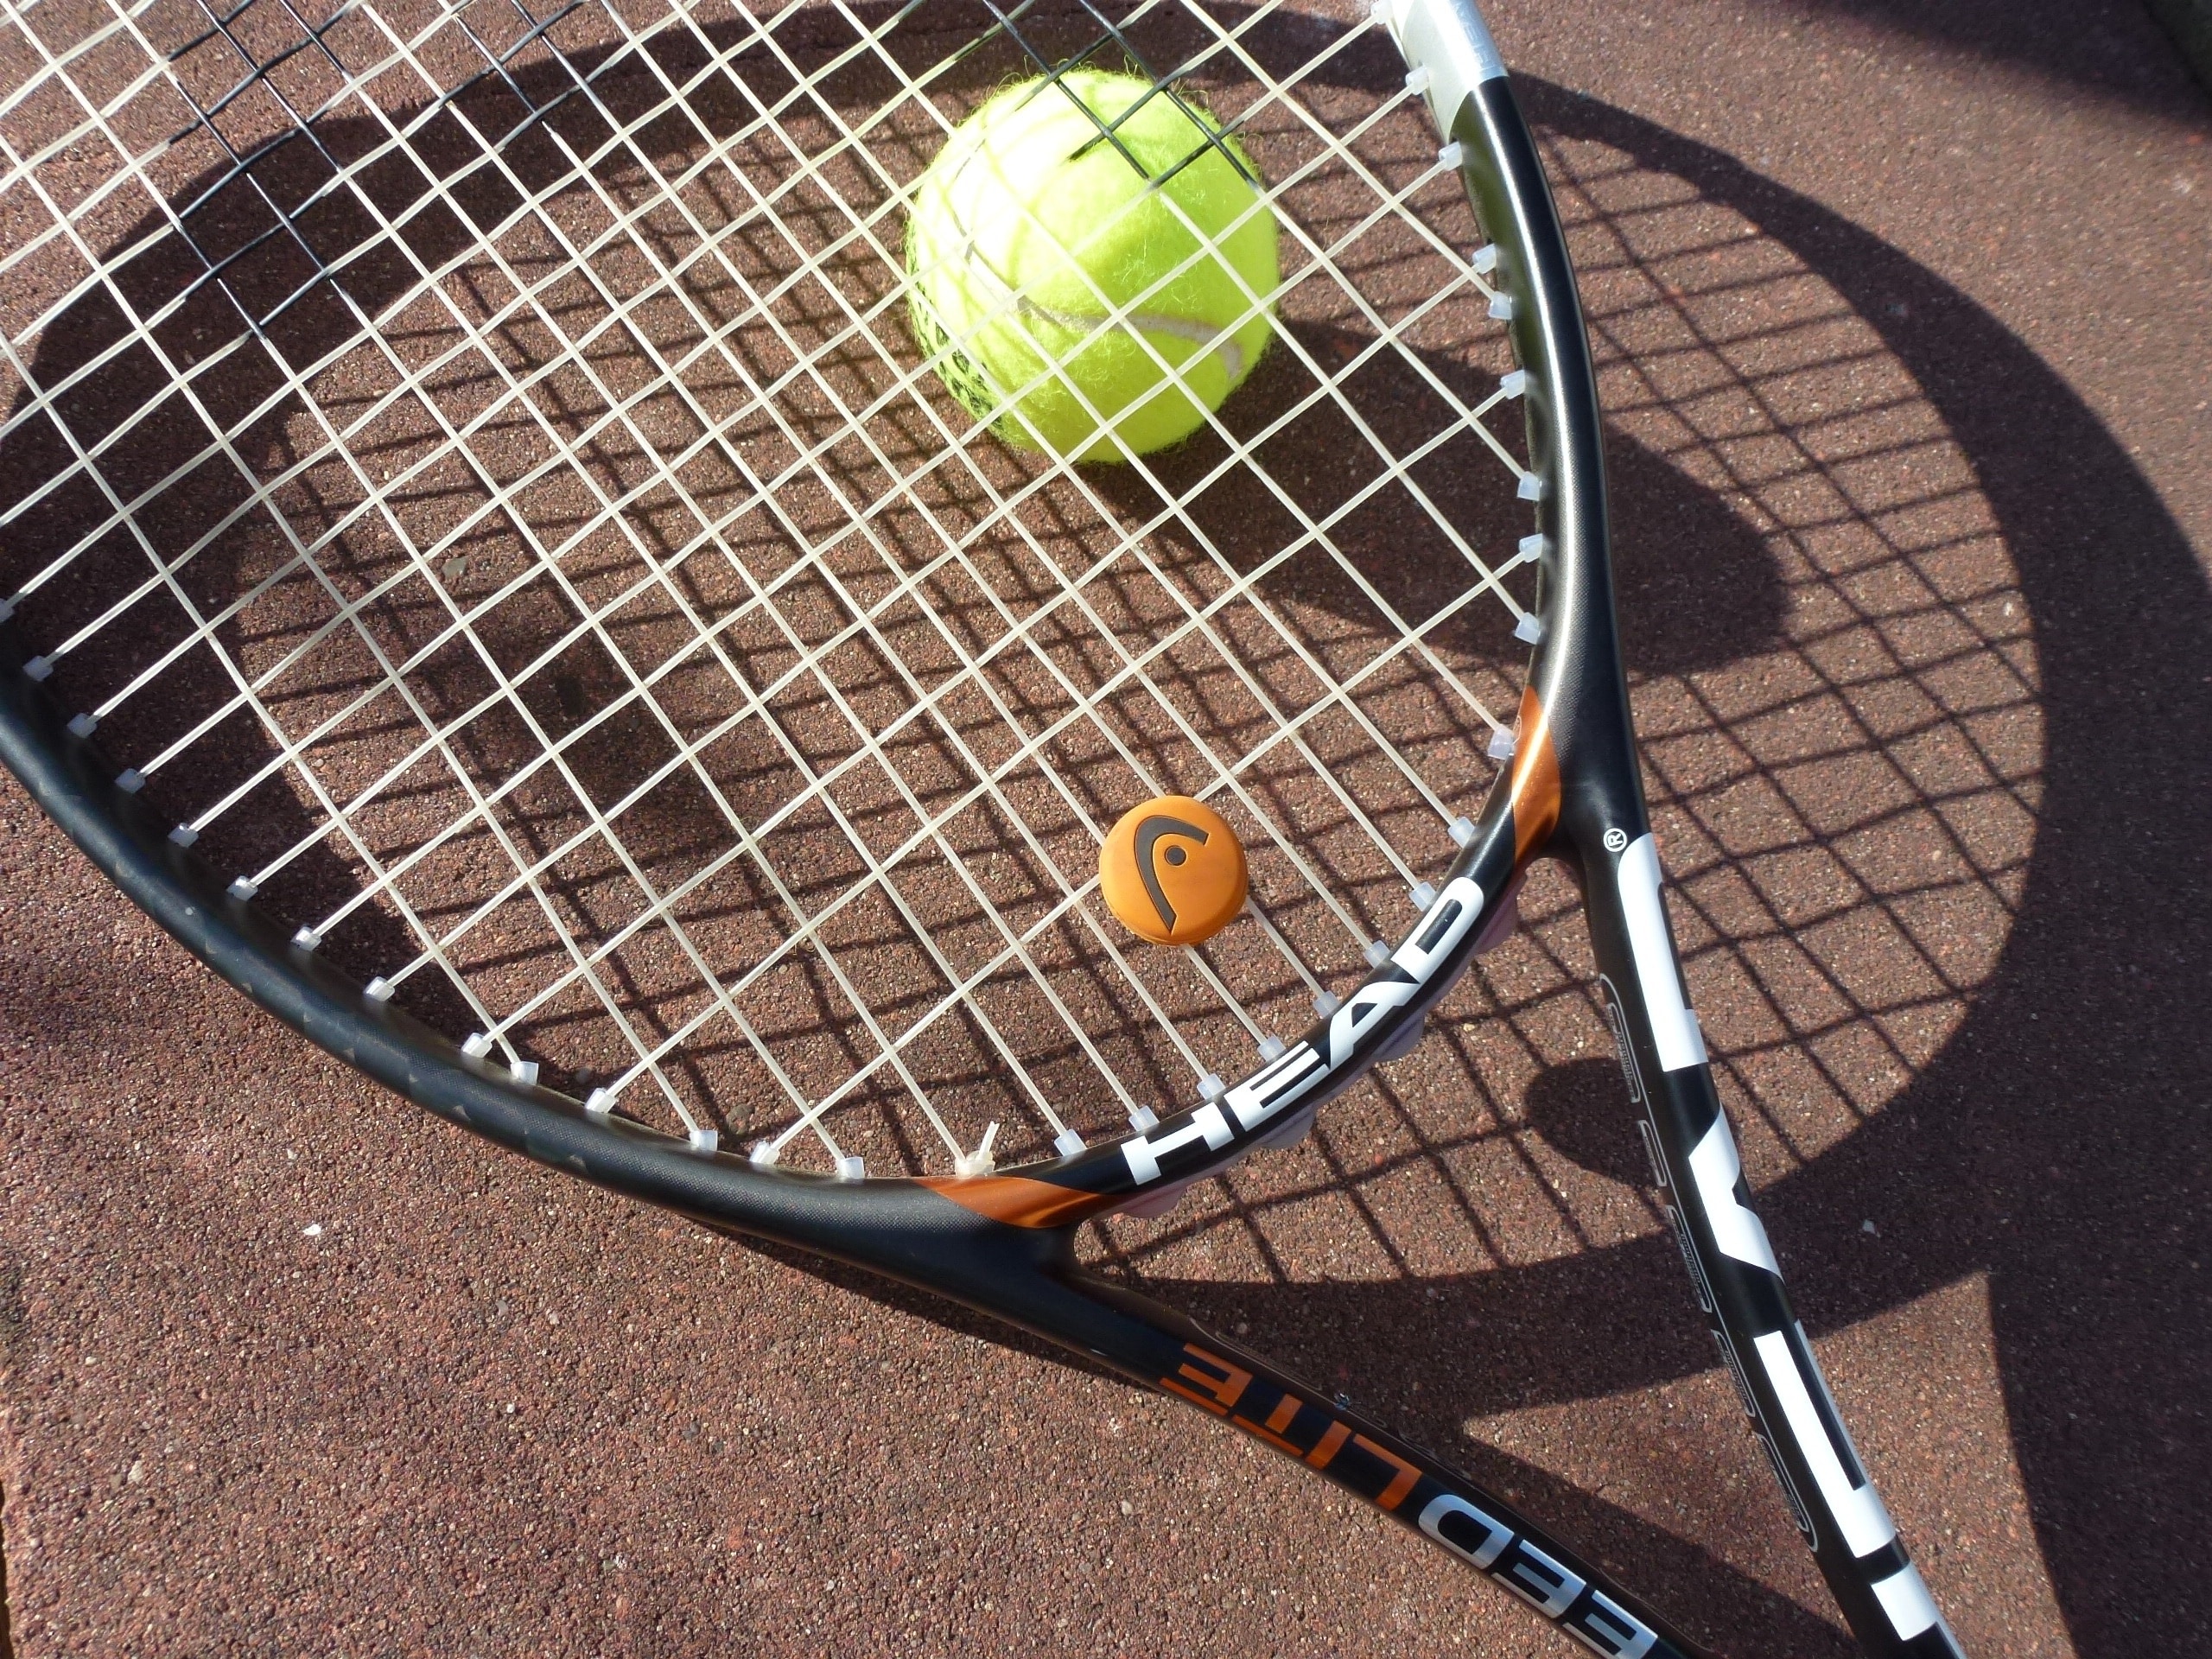 Tennis, Tennis Racket, Tennis Ball, tennis, tennis ball